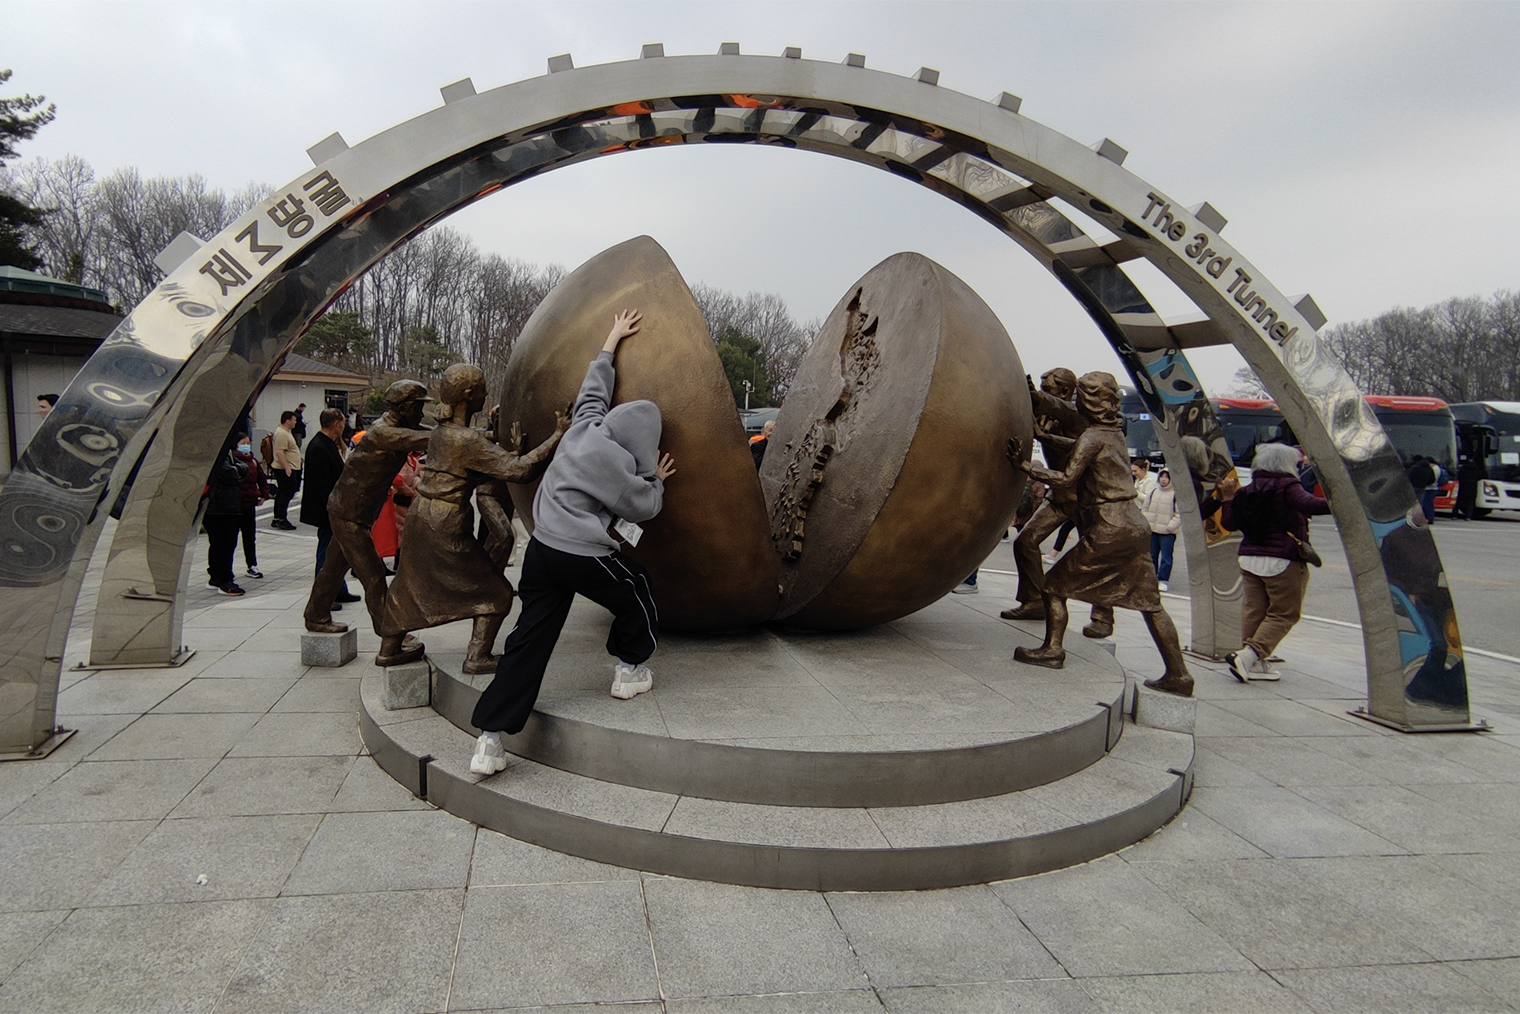 Пожалуй, самый трогательный памятник в этой зоне — шар, почти расколотый надвое и с картой Корейского полуострова на внутреннем срезе. С двух сторон его пытаются соединить корейские семьи, а также некоторые туристы